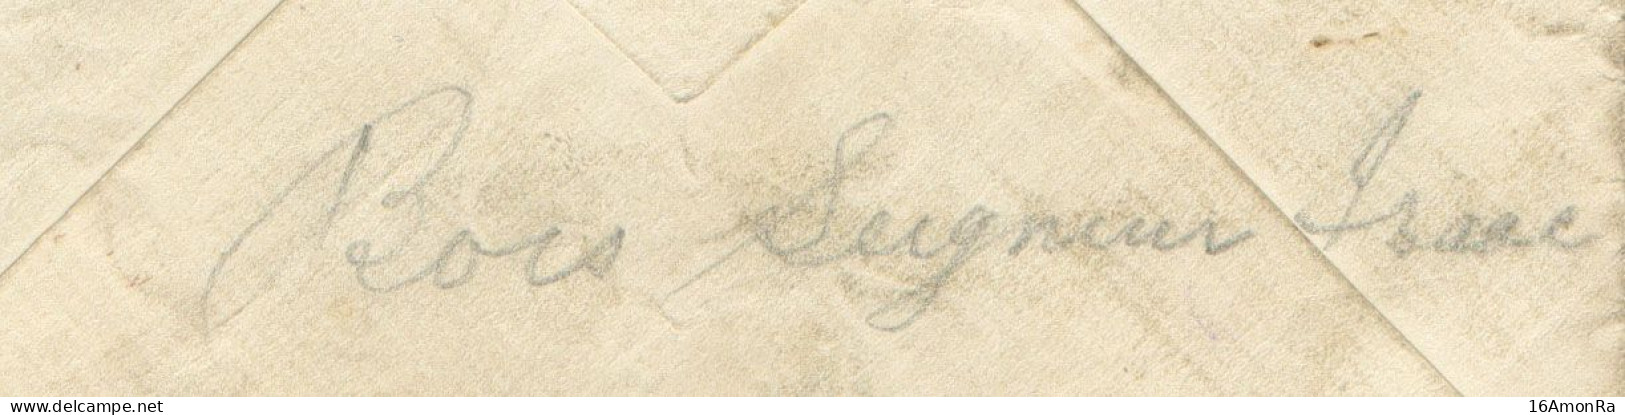 Enveloppe écrite Par Un Belge De Bois-Seigneur-Isaac (près Lillois Et Waterloo) Pour Compte D'un Prisonnier Britannique - Armée Belge